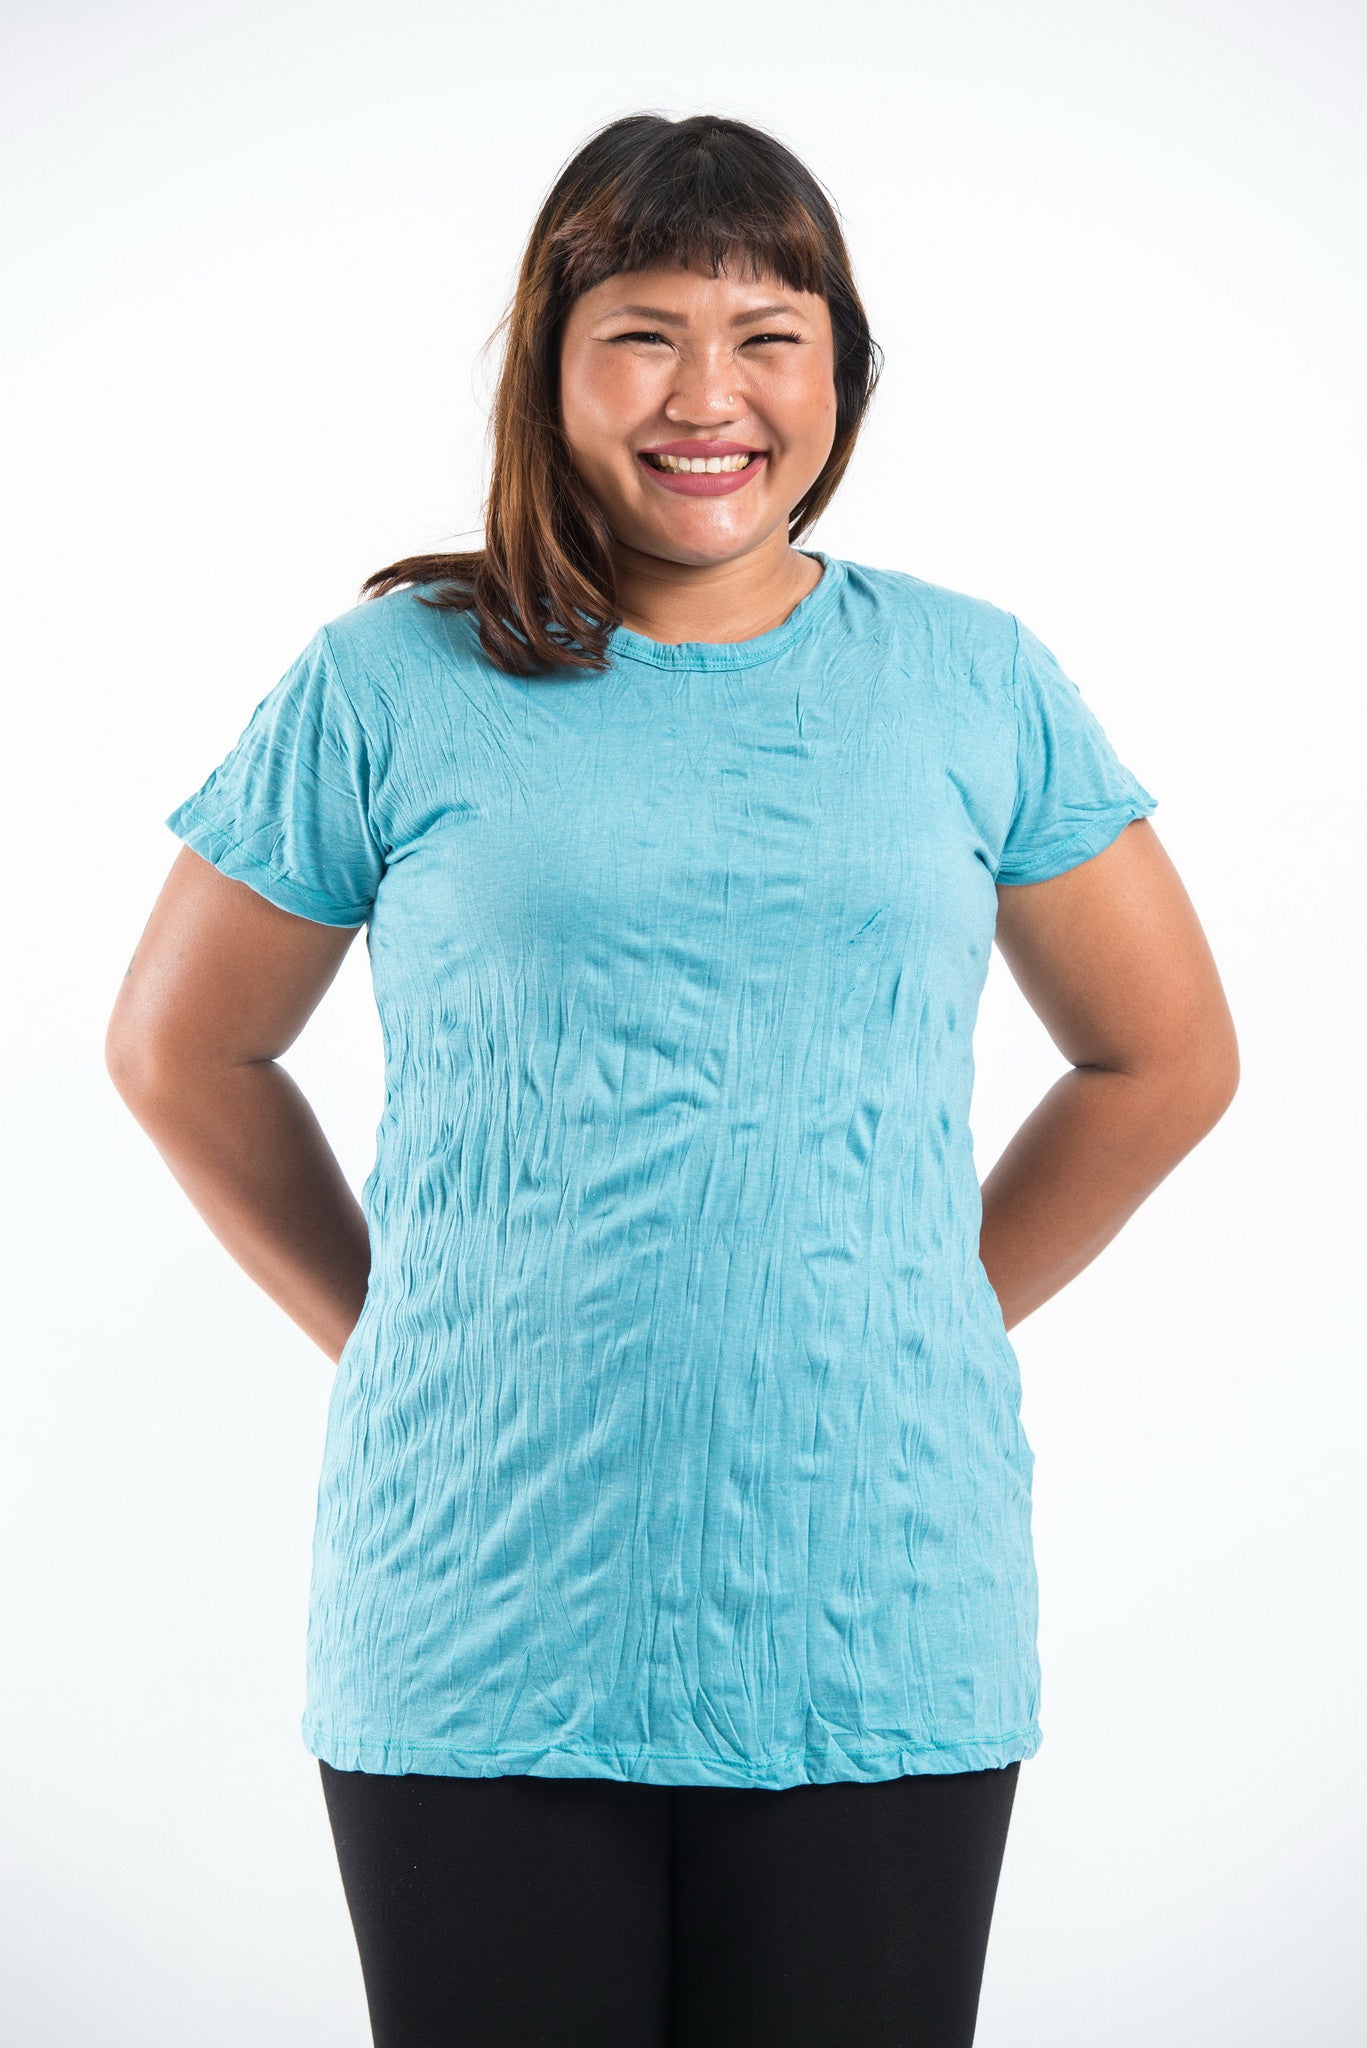 Plus Size Sure Design Women's Blank T-Shirt Turquoise – Sure Design  Wholesale